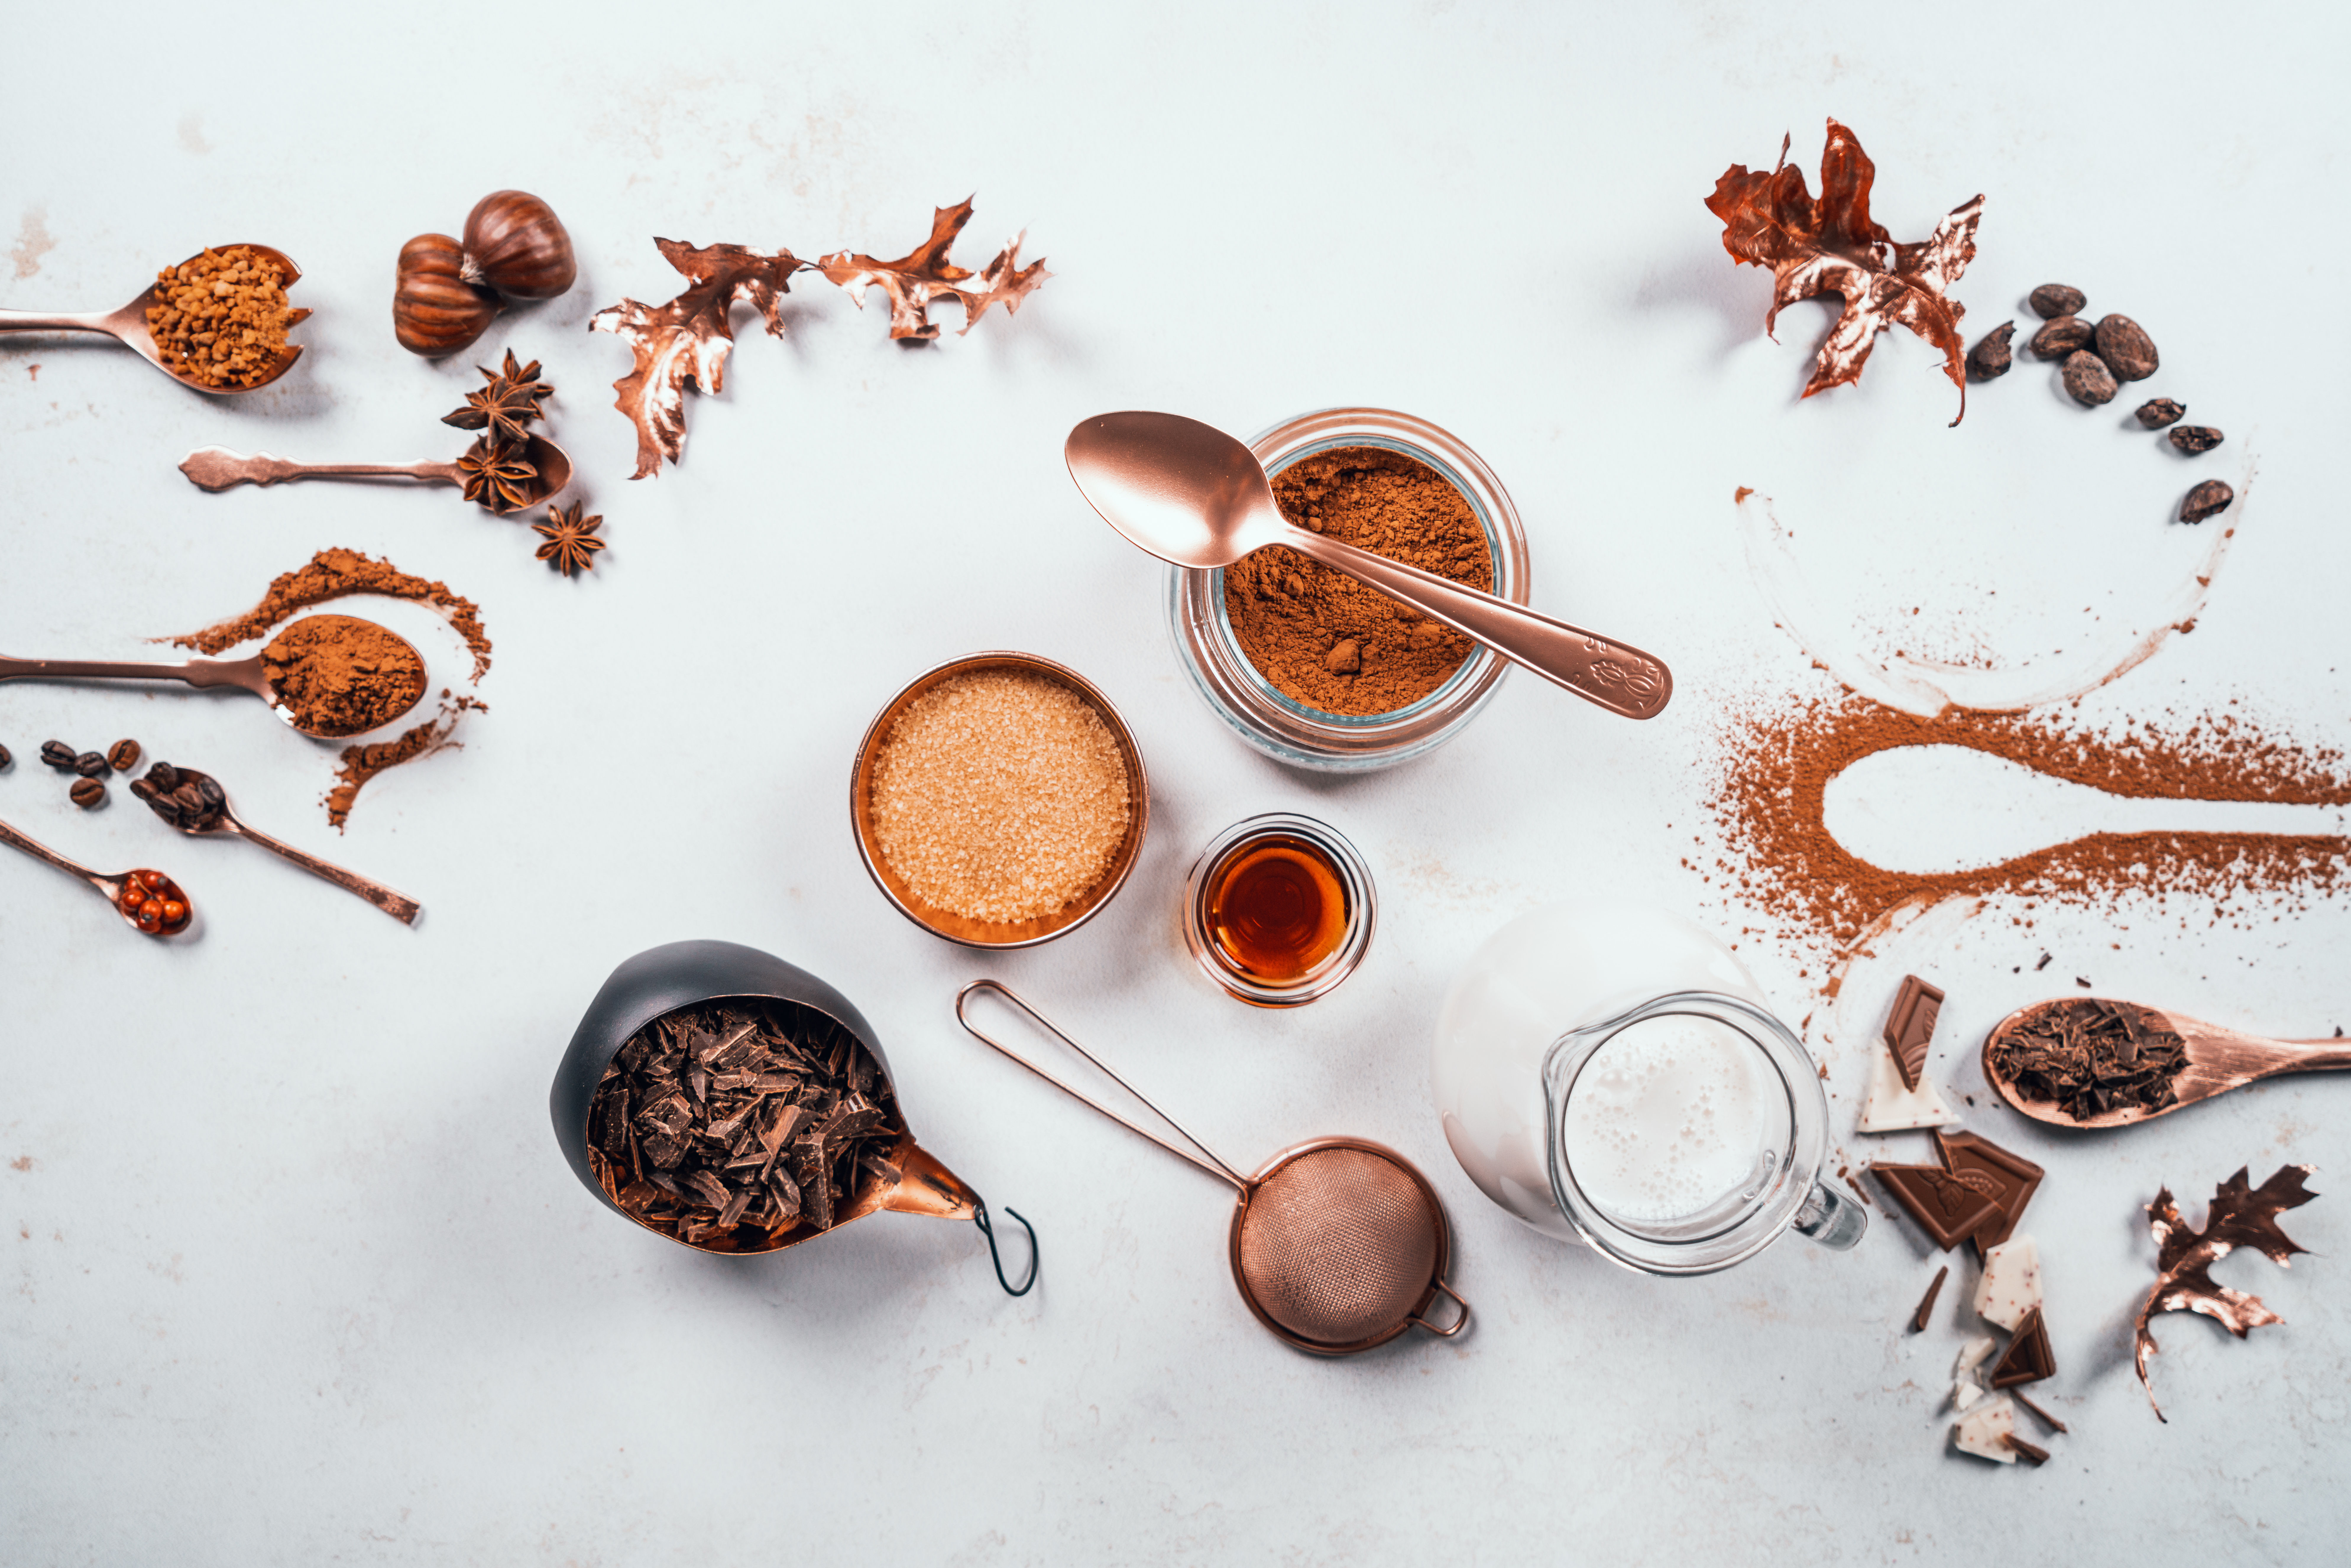 ingredientes para hacer chocolate caliente en casa, ralladura de chocolate, cacao en polvo, azucar moreno y extracto de vainilla